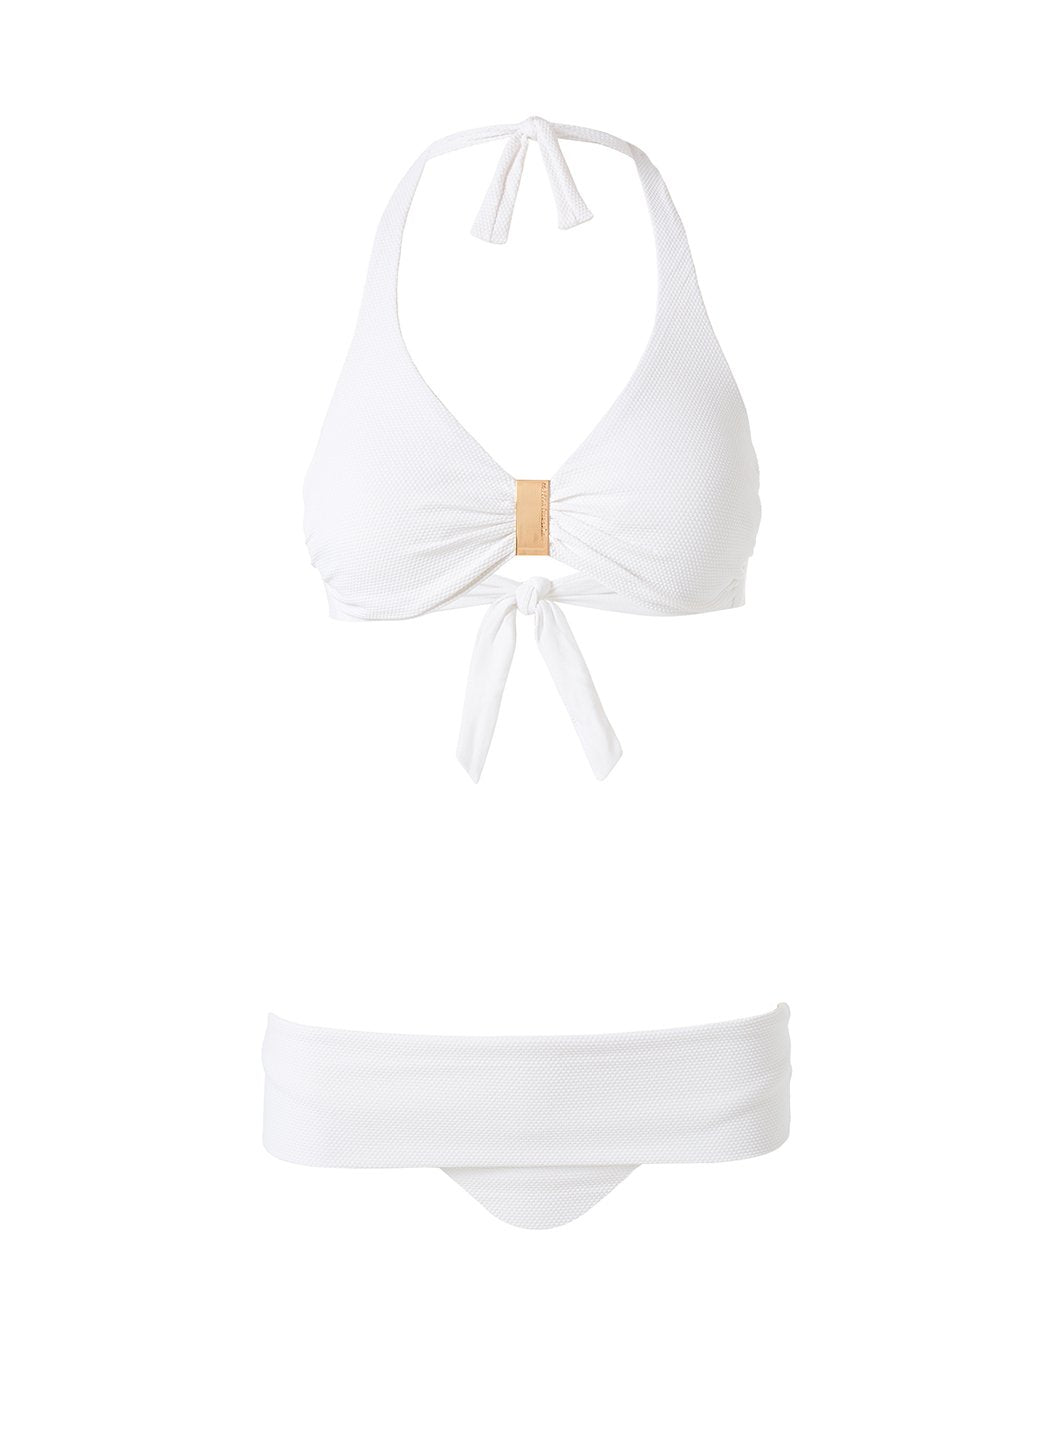 Provence White Pique Bikini Bottom